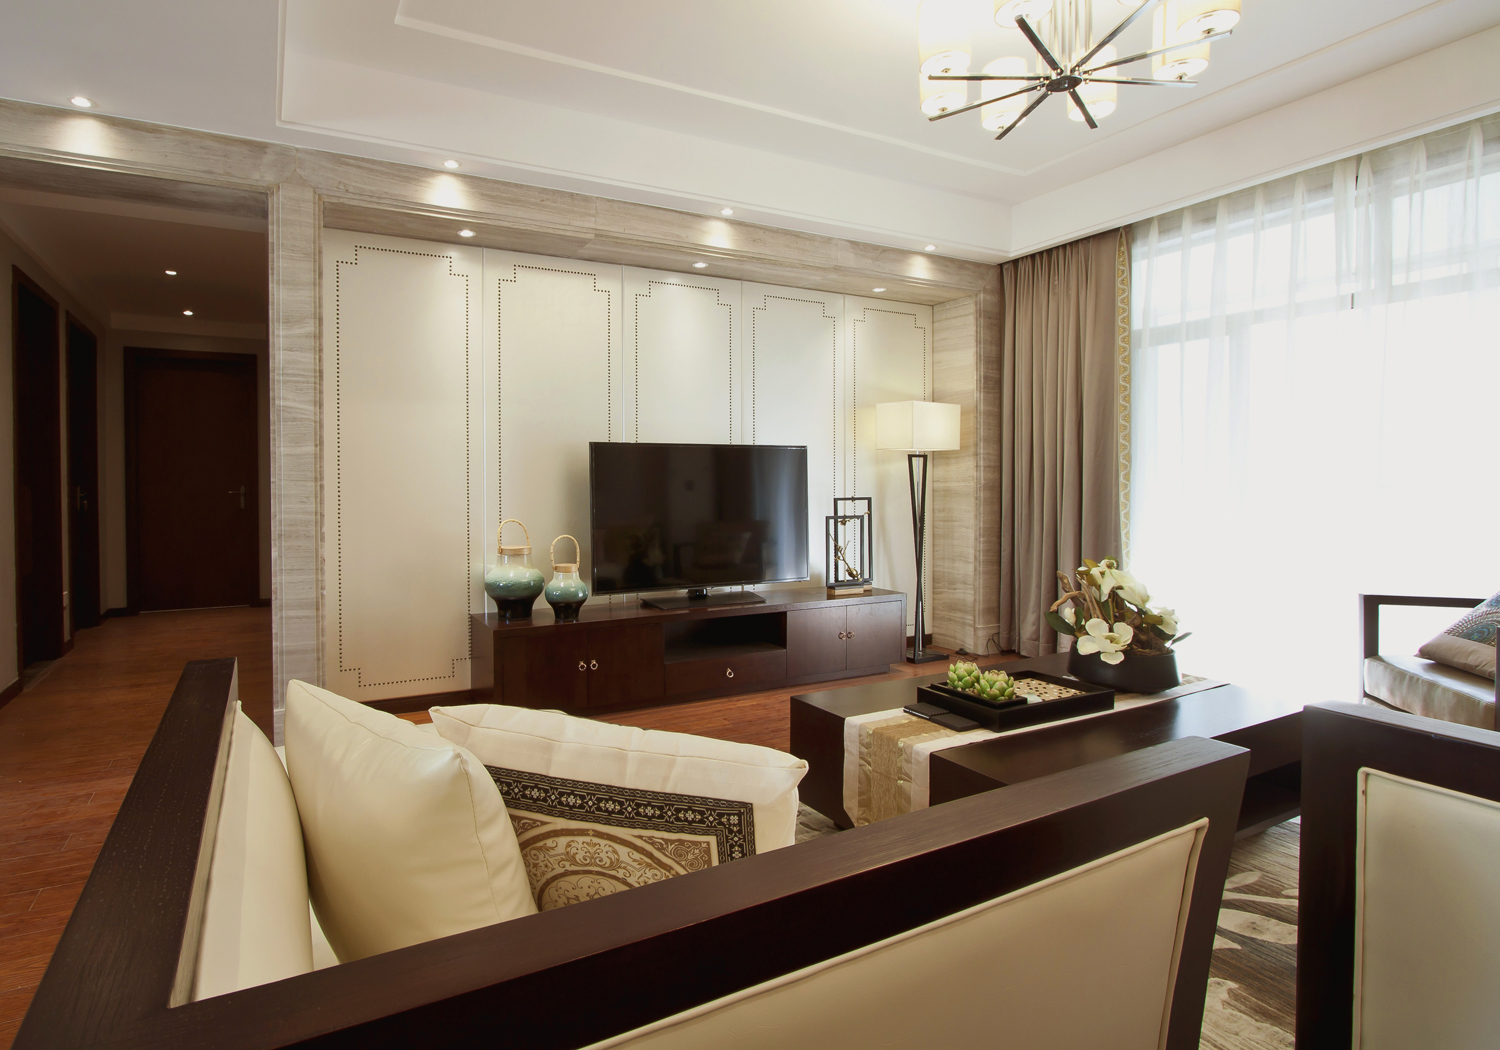 客厅-空间与自然生态的融合，以浅色温馨的感觉为主调，对现代生活精致与个性的追求，体现出休闲舒适之美。